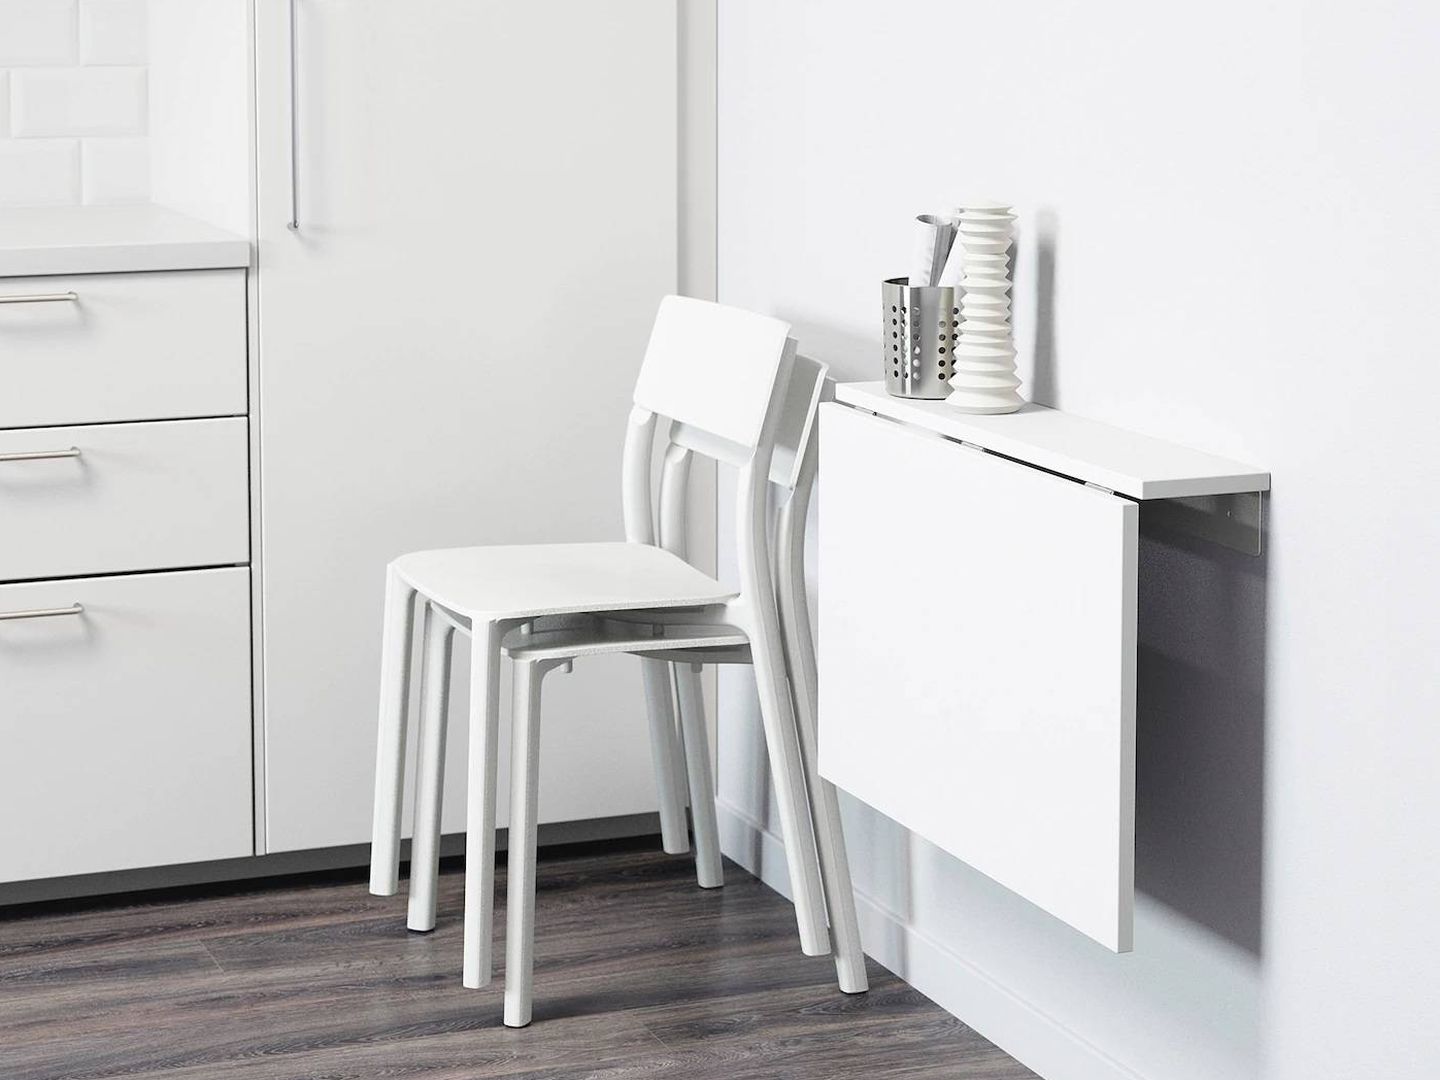 Ikea tiene prácticas soluciones de decoración, como esta mesa plegable. (Cortesía)